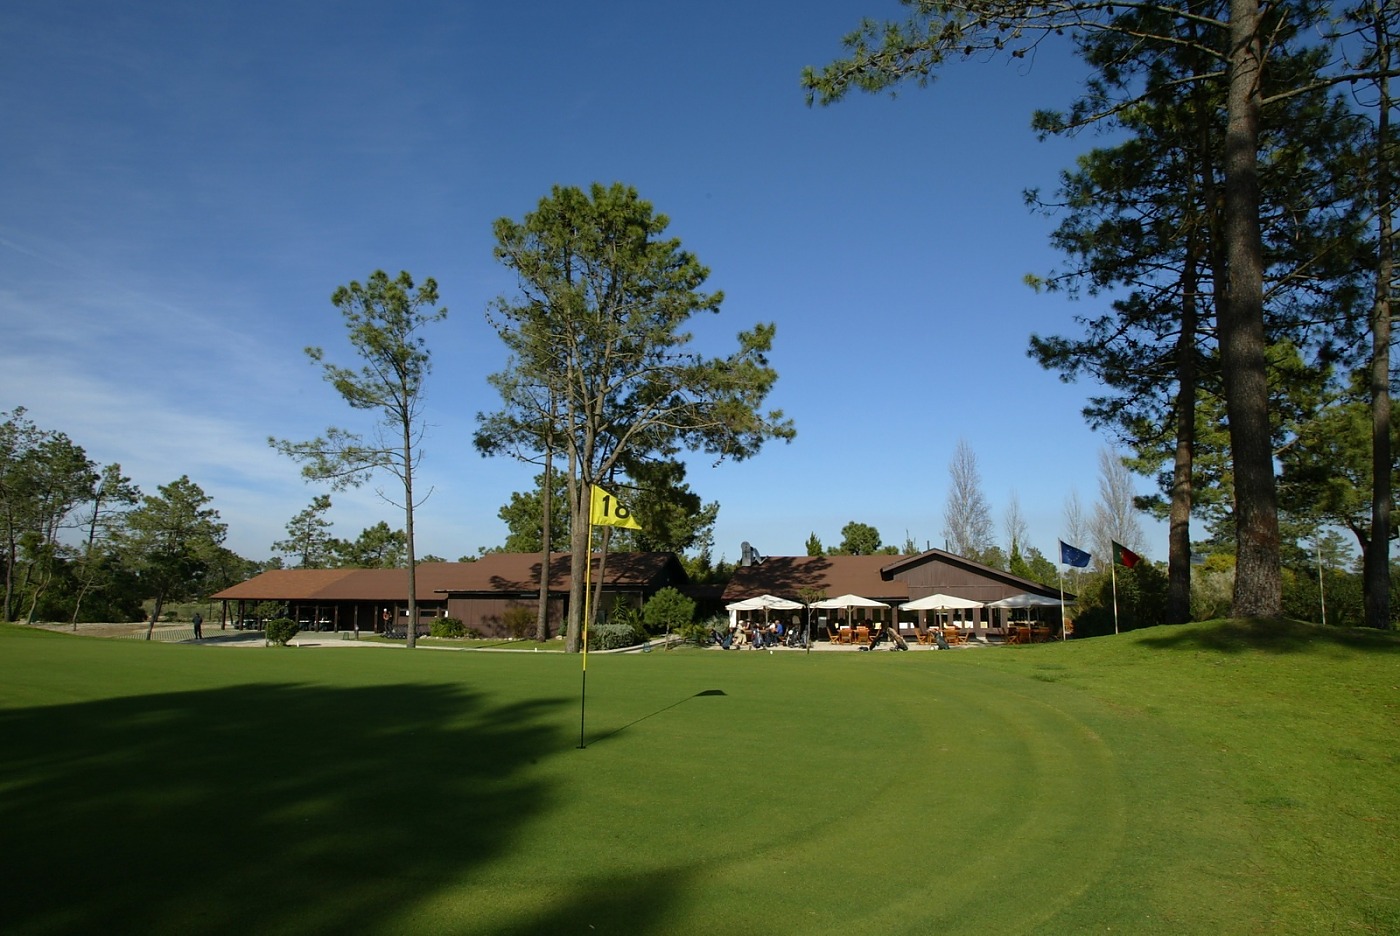 Troia Golf Course